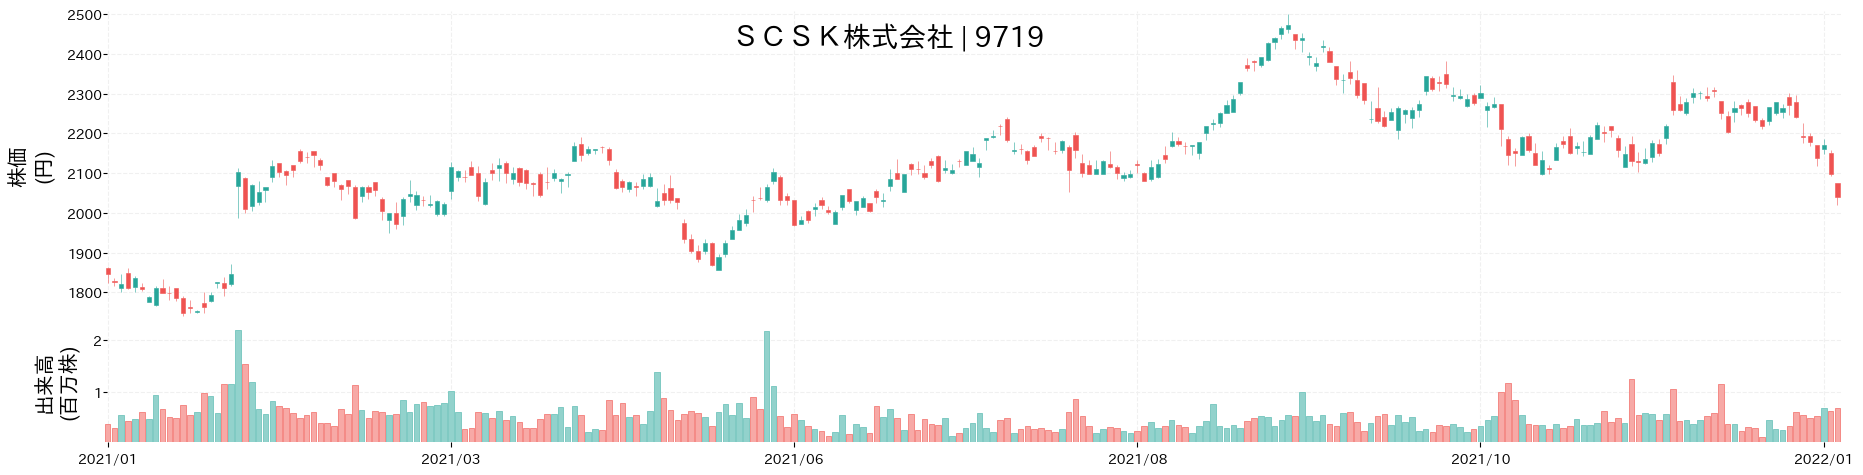 SCSKの株価推移(2021)